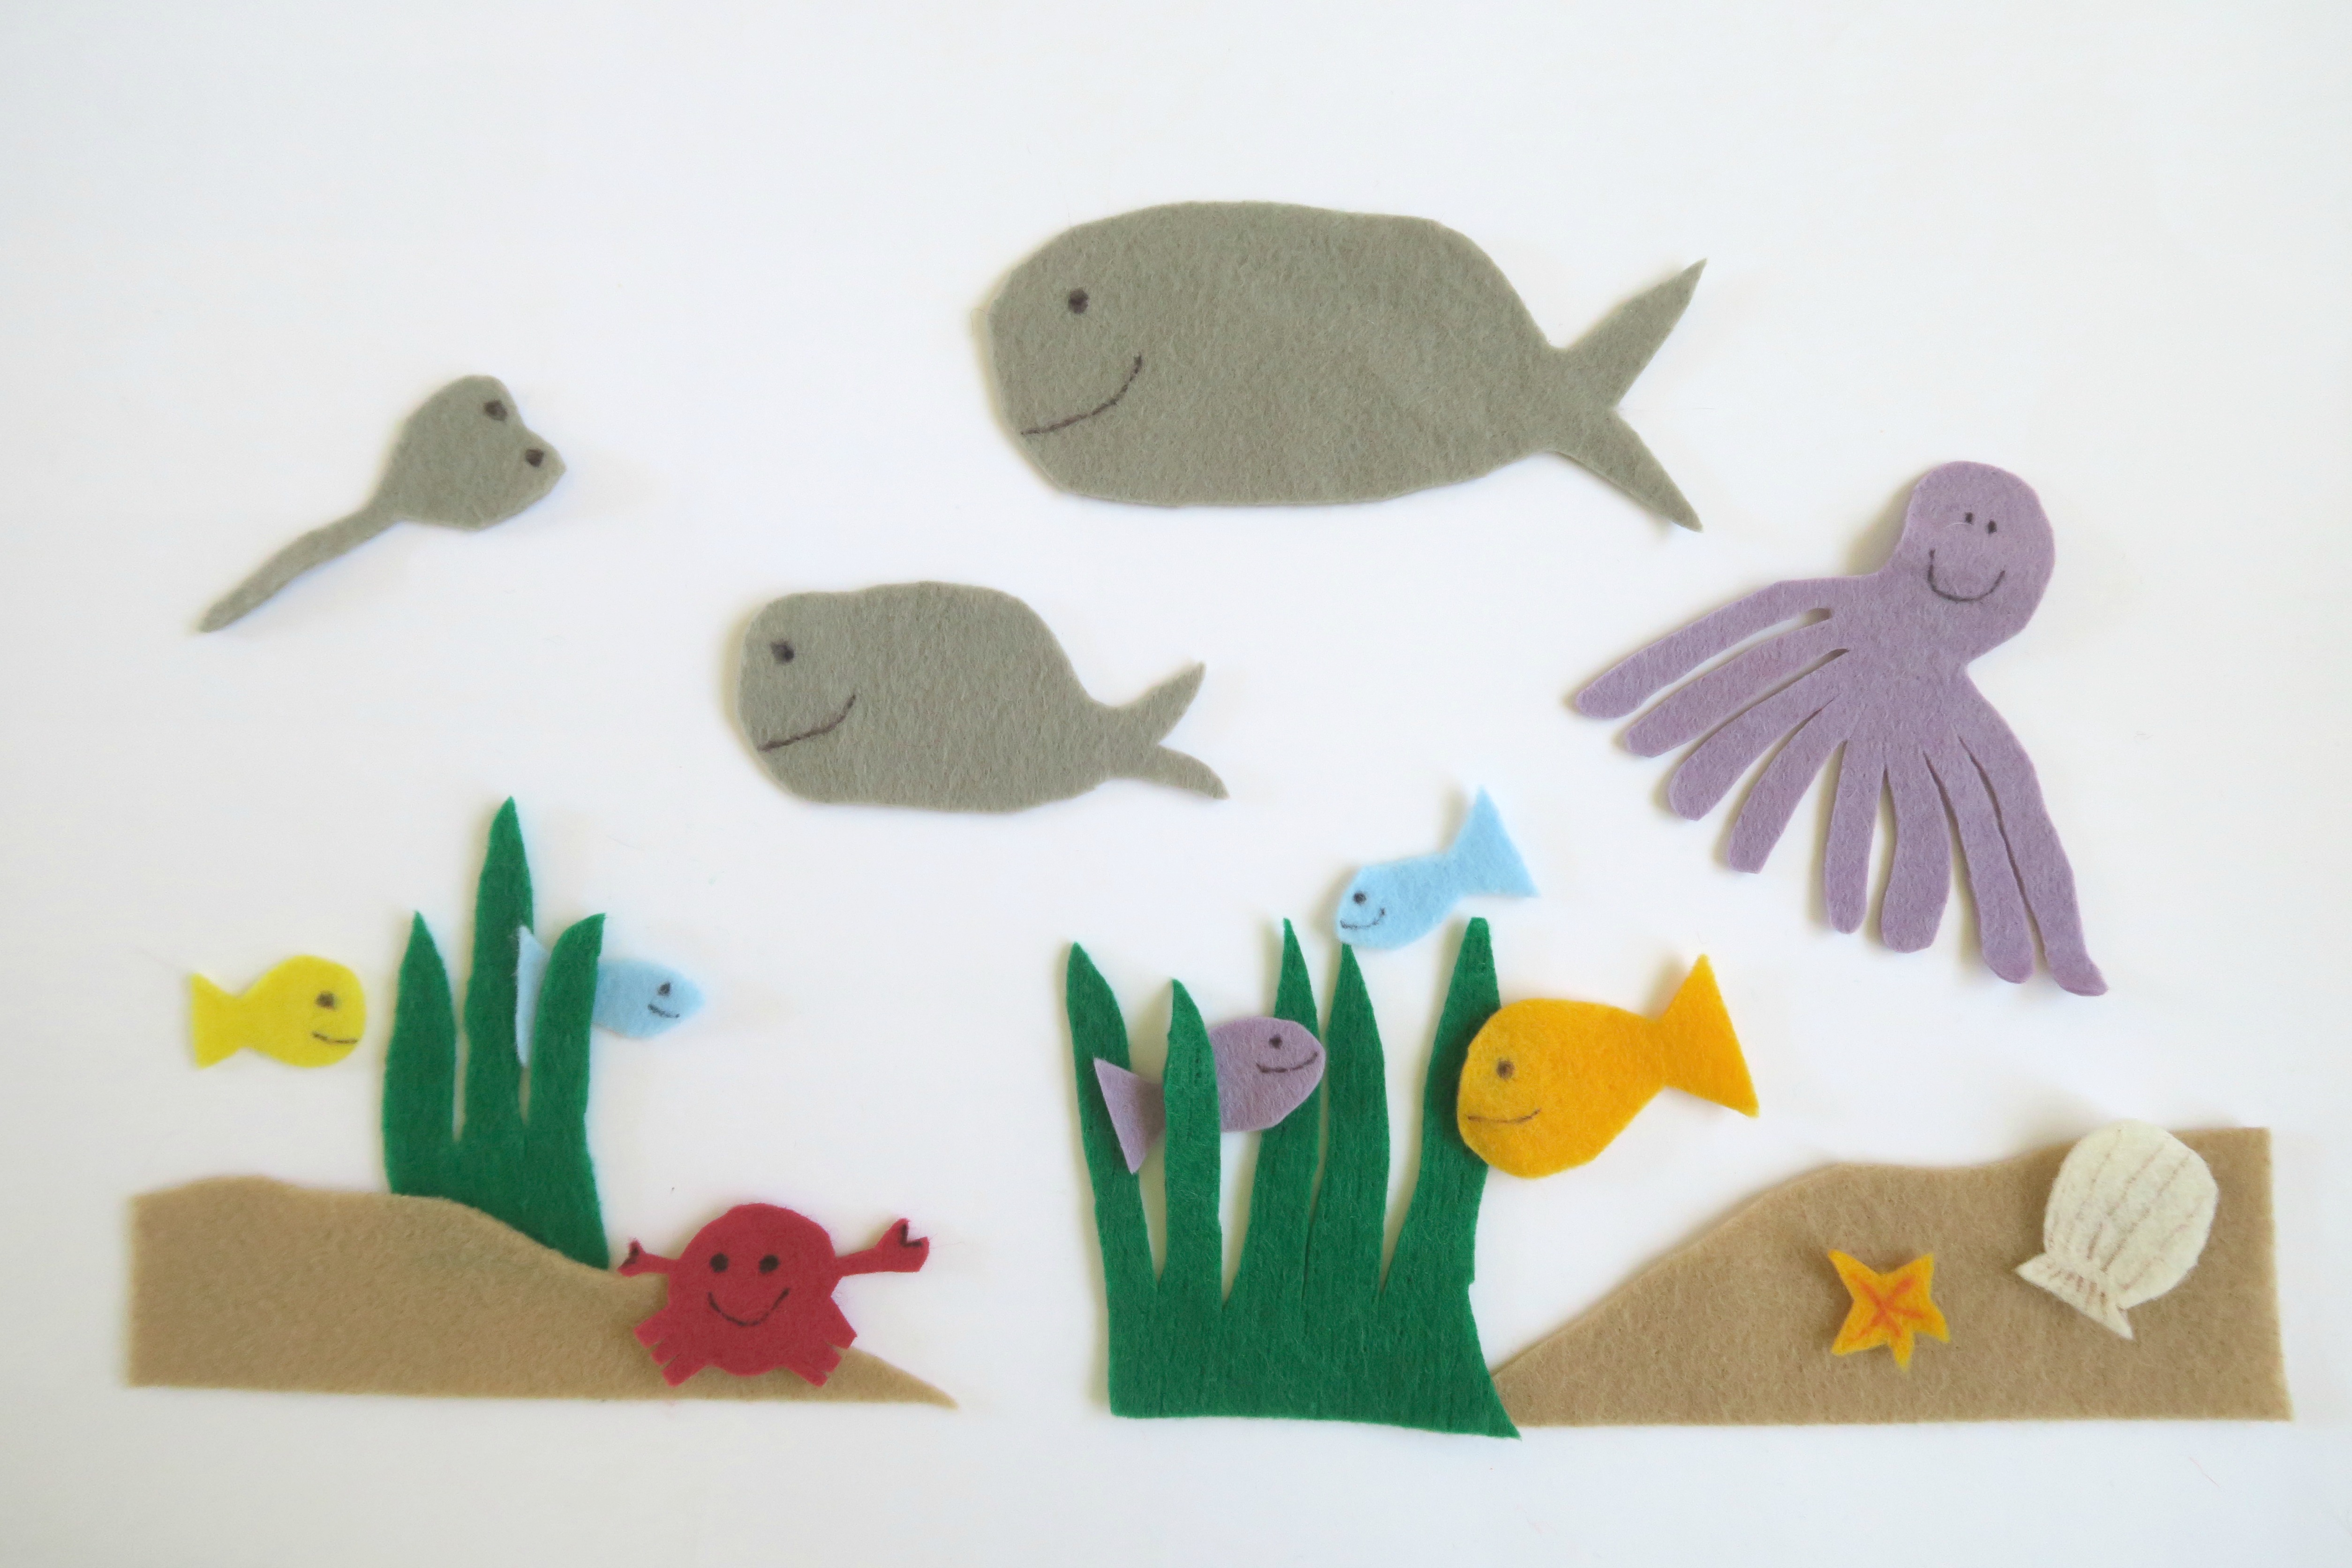 Underwater Felt Animals | Fun Family Crafts5016 x 3344